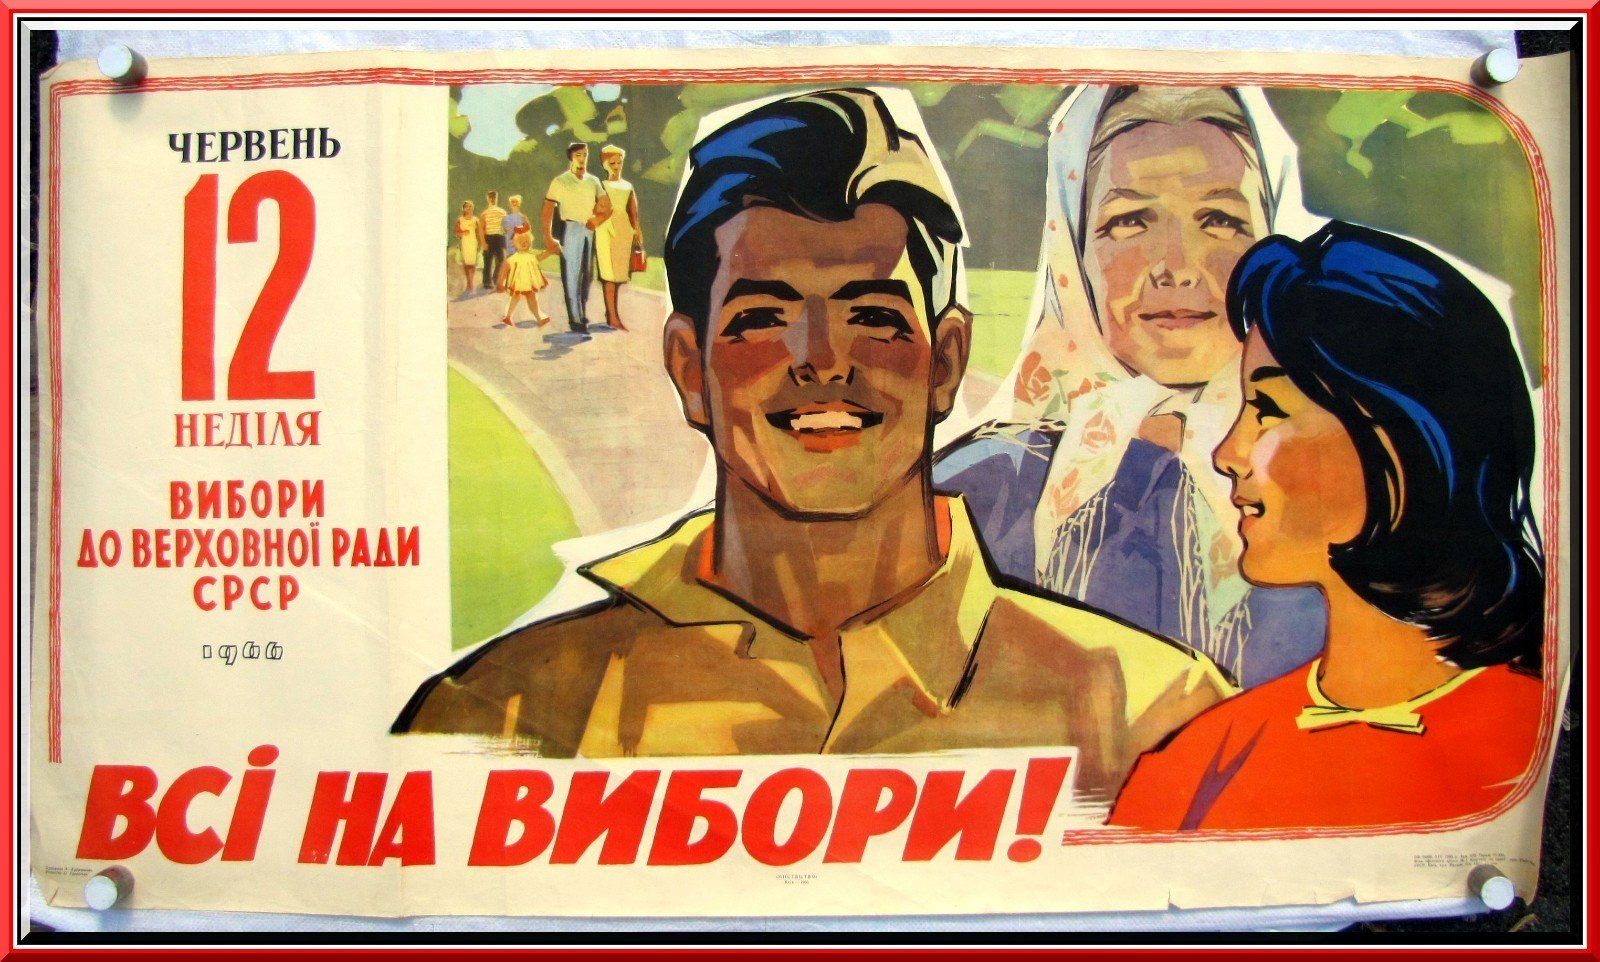 14 лозунг. Плакат. Плакаты советского времени. Советские платки. Популярные советские плакаты.